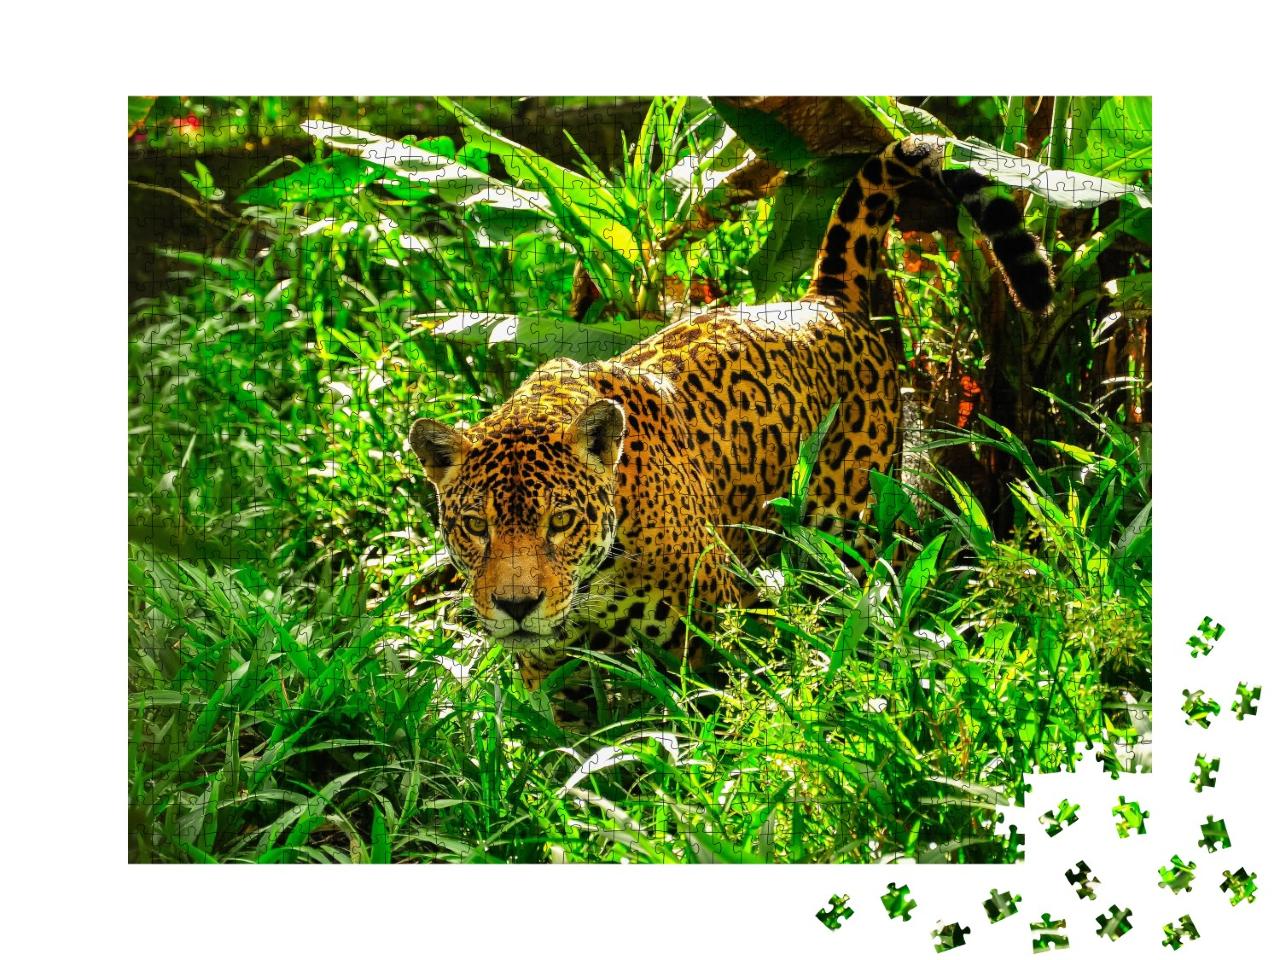 Puzzle de 1000 pièces « Un jaguar adulte à l'affût dans l'herbe »